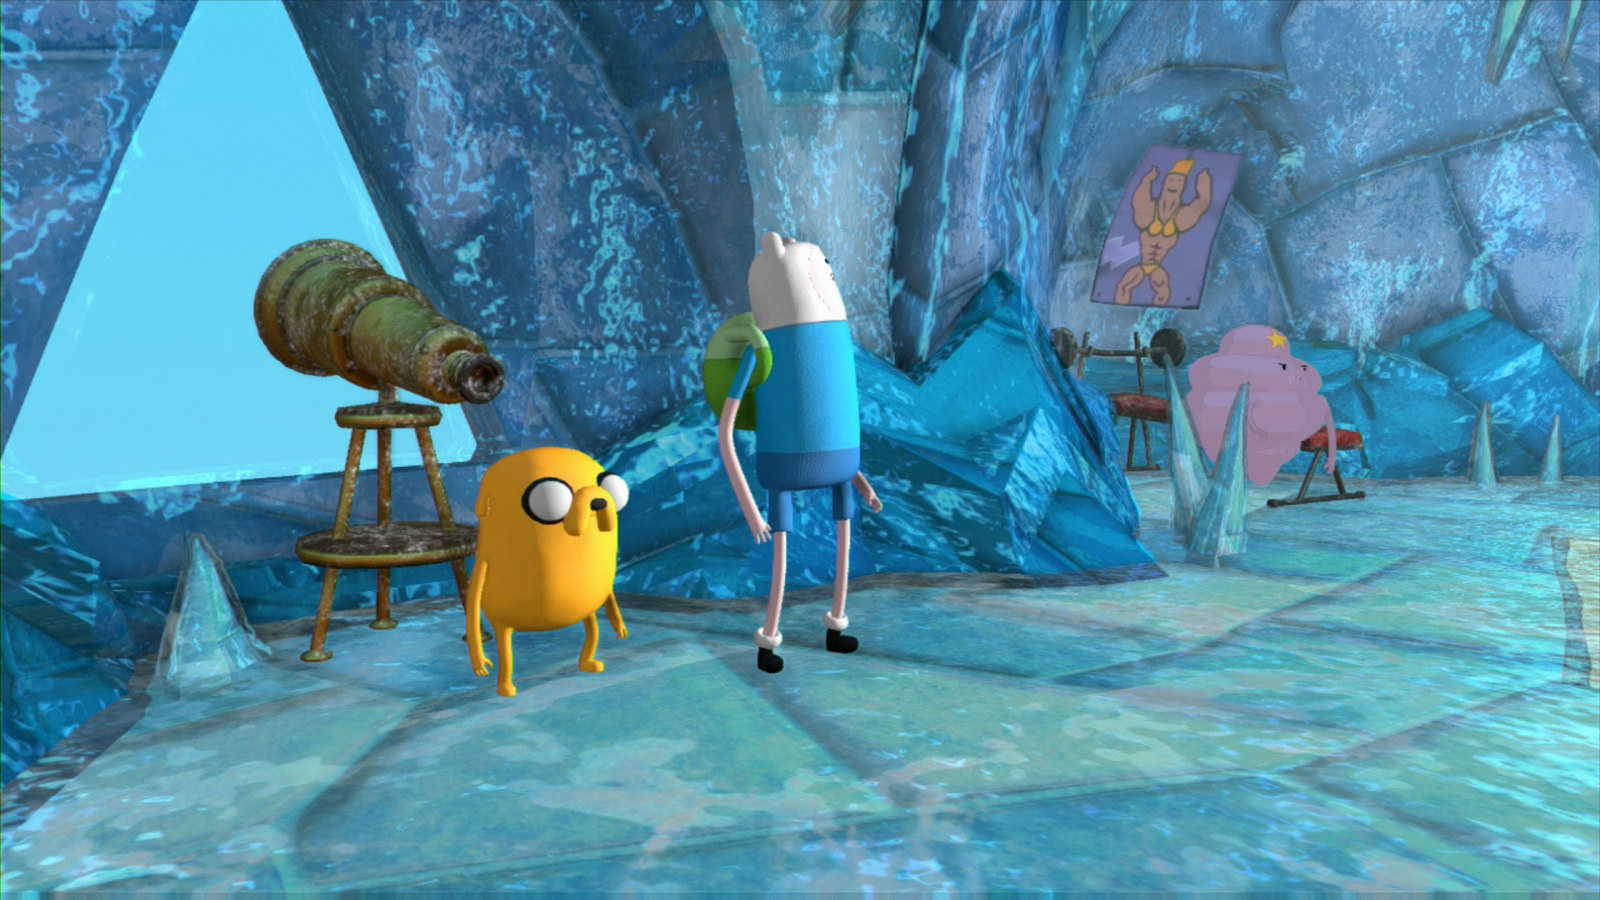 تحميل لعبة  Adventure Time  مدفوعة للكمبيوتر والاندرويد والكمبيوتر آخر اصدار مجاني